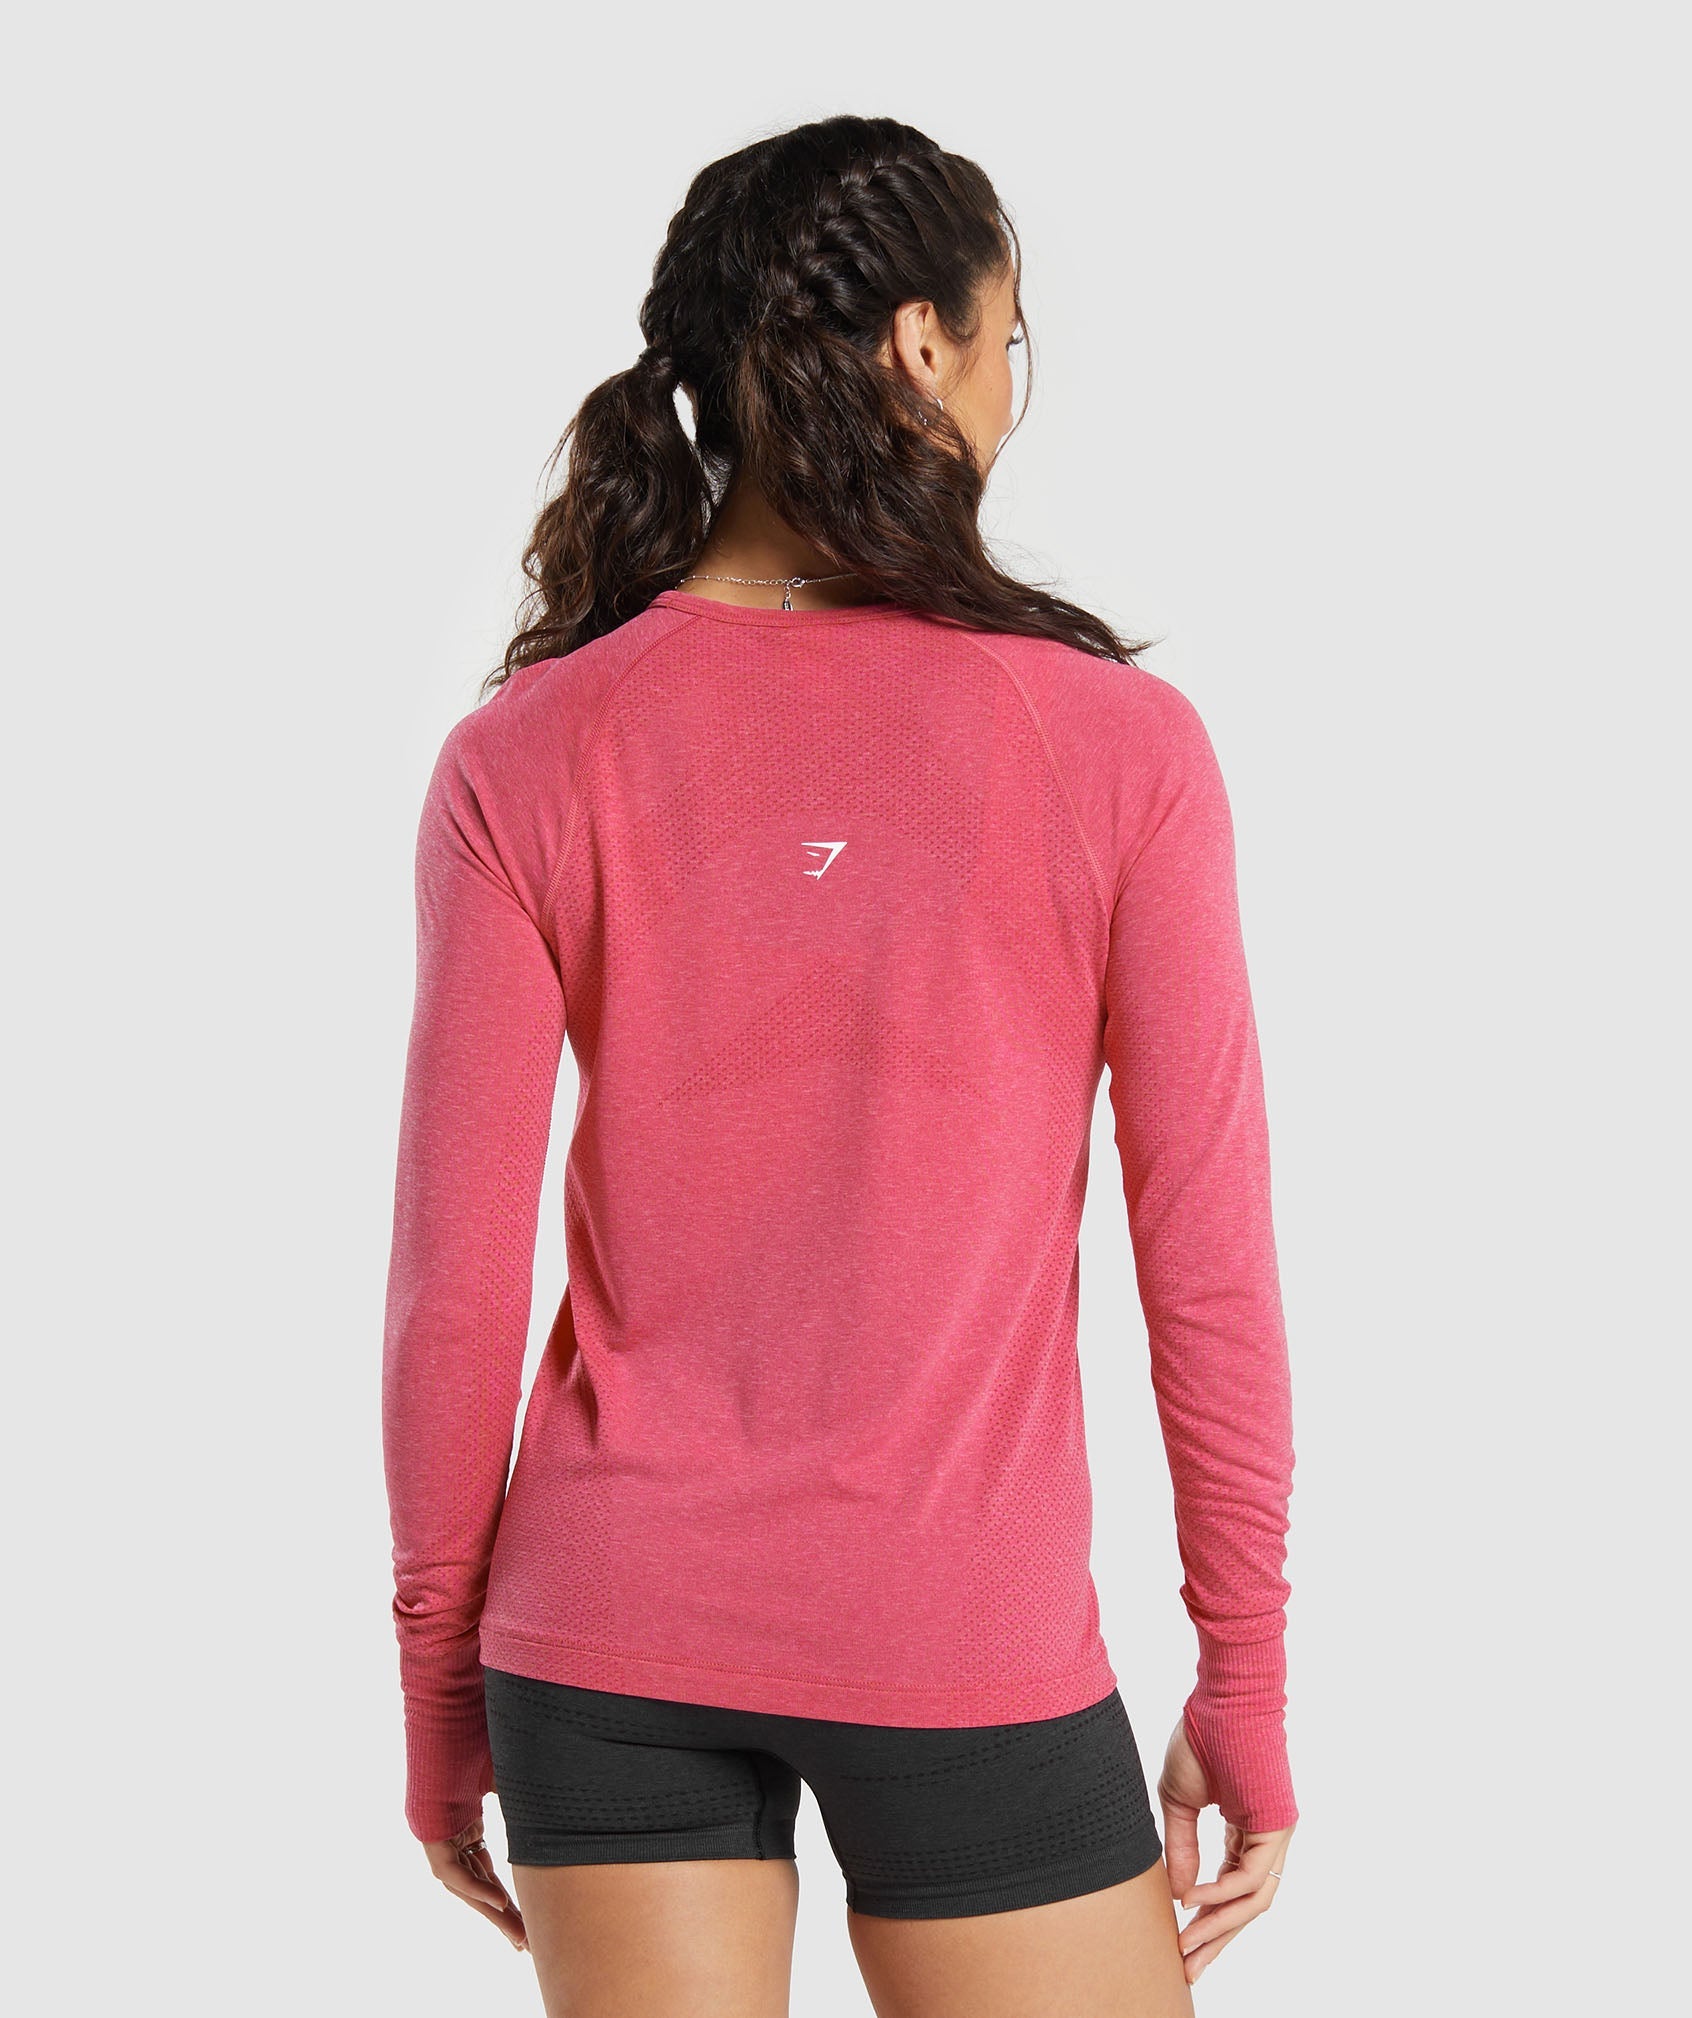 Women's GymShark Vital Seamless Crop 2.0 Long Sleeve Shirt Size Small Pink  Marl